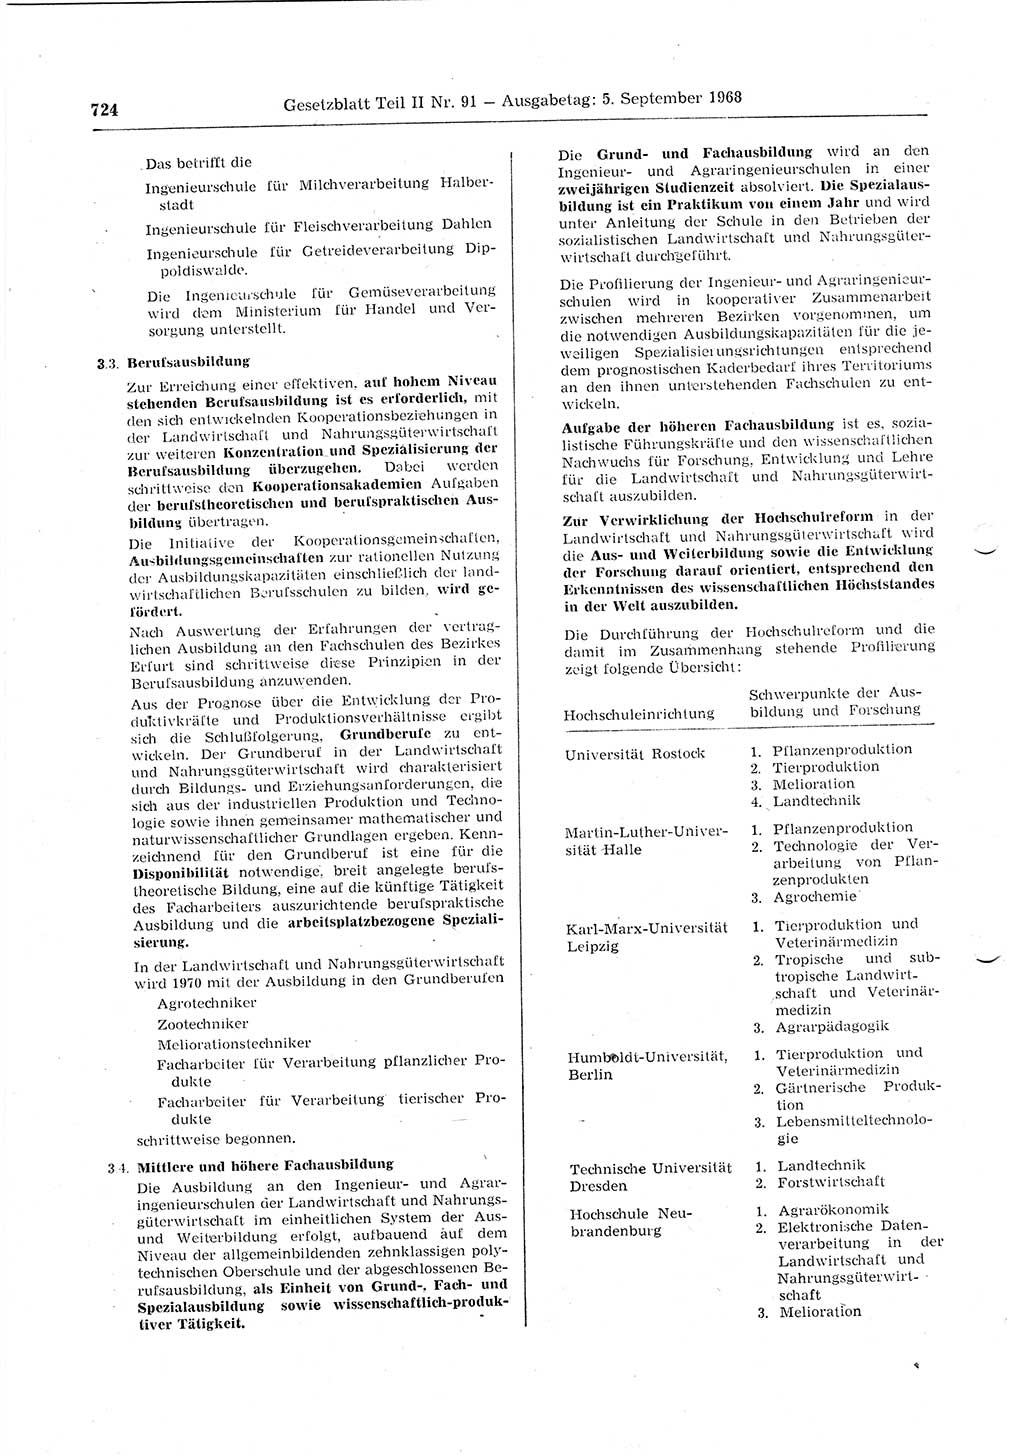 Gesetzblatt (GBl.) der Deutschen Demokratischen Republik (DDR) Teil ⅠⅠ 1968, Seite 724 (GBl. DDR ⅠⅠ 1968, S. 724)